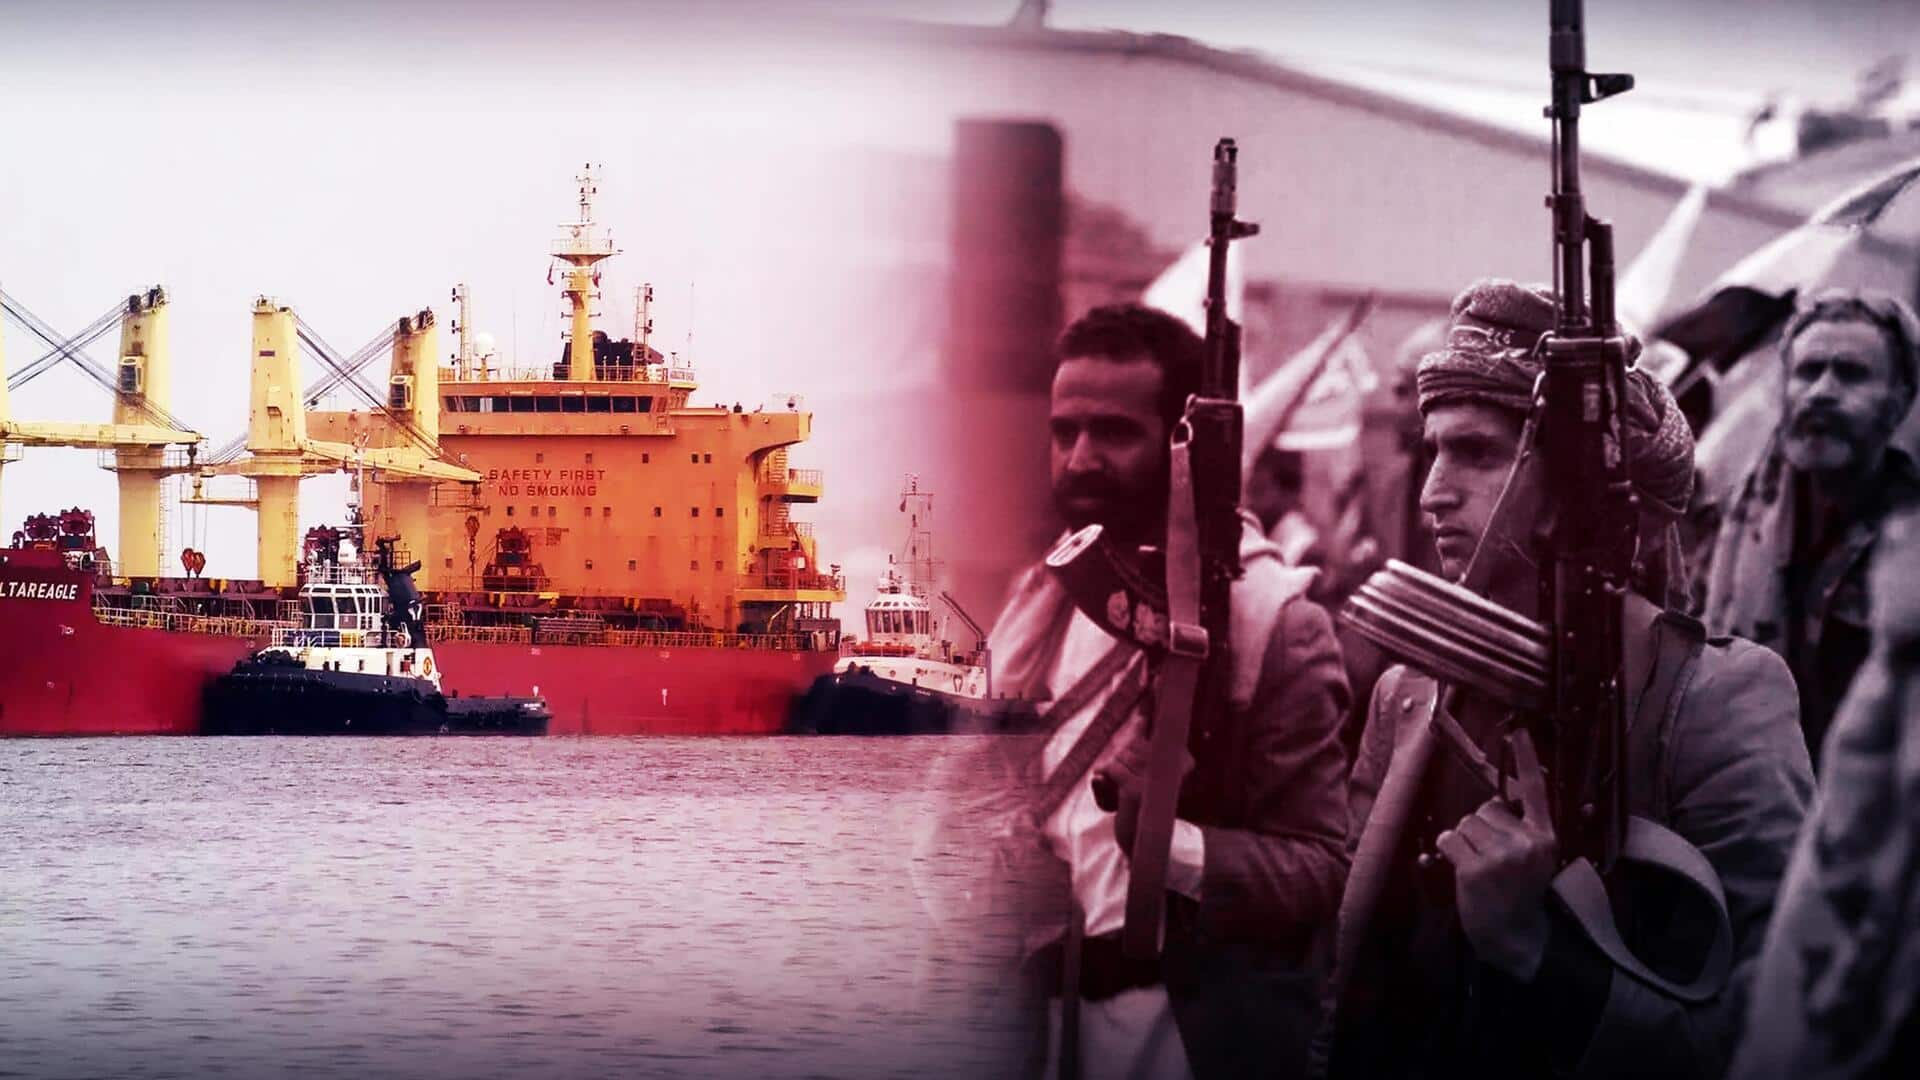 हूती विद्रोहियों ने लाल सागर में फिर किया जहाज पर हमला, अमेरिका ने की जवाबी कार्रवाई